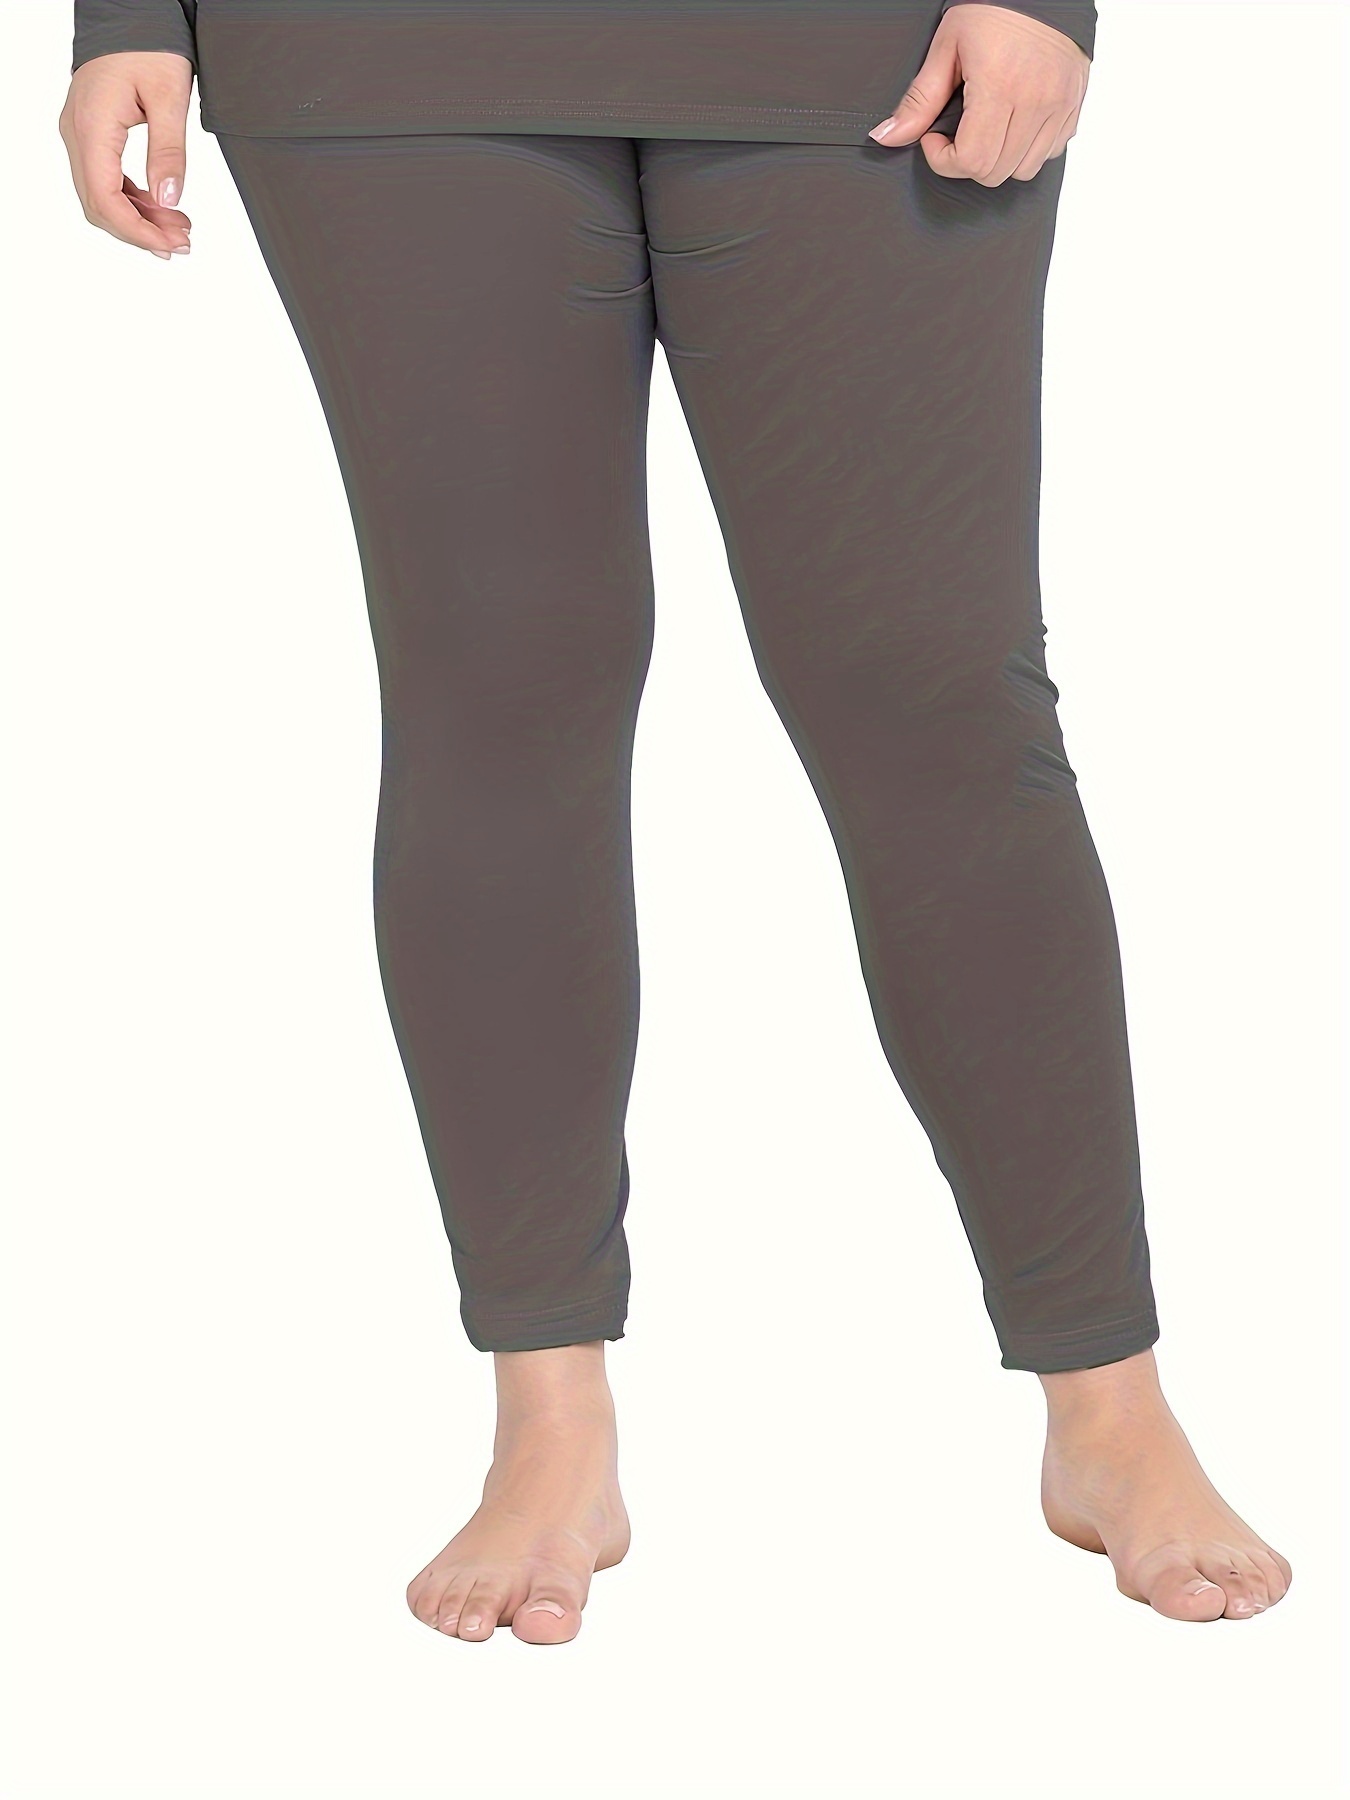 plus size leggings for women Thermal Fleece Lined Leggings